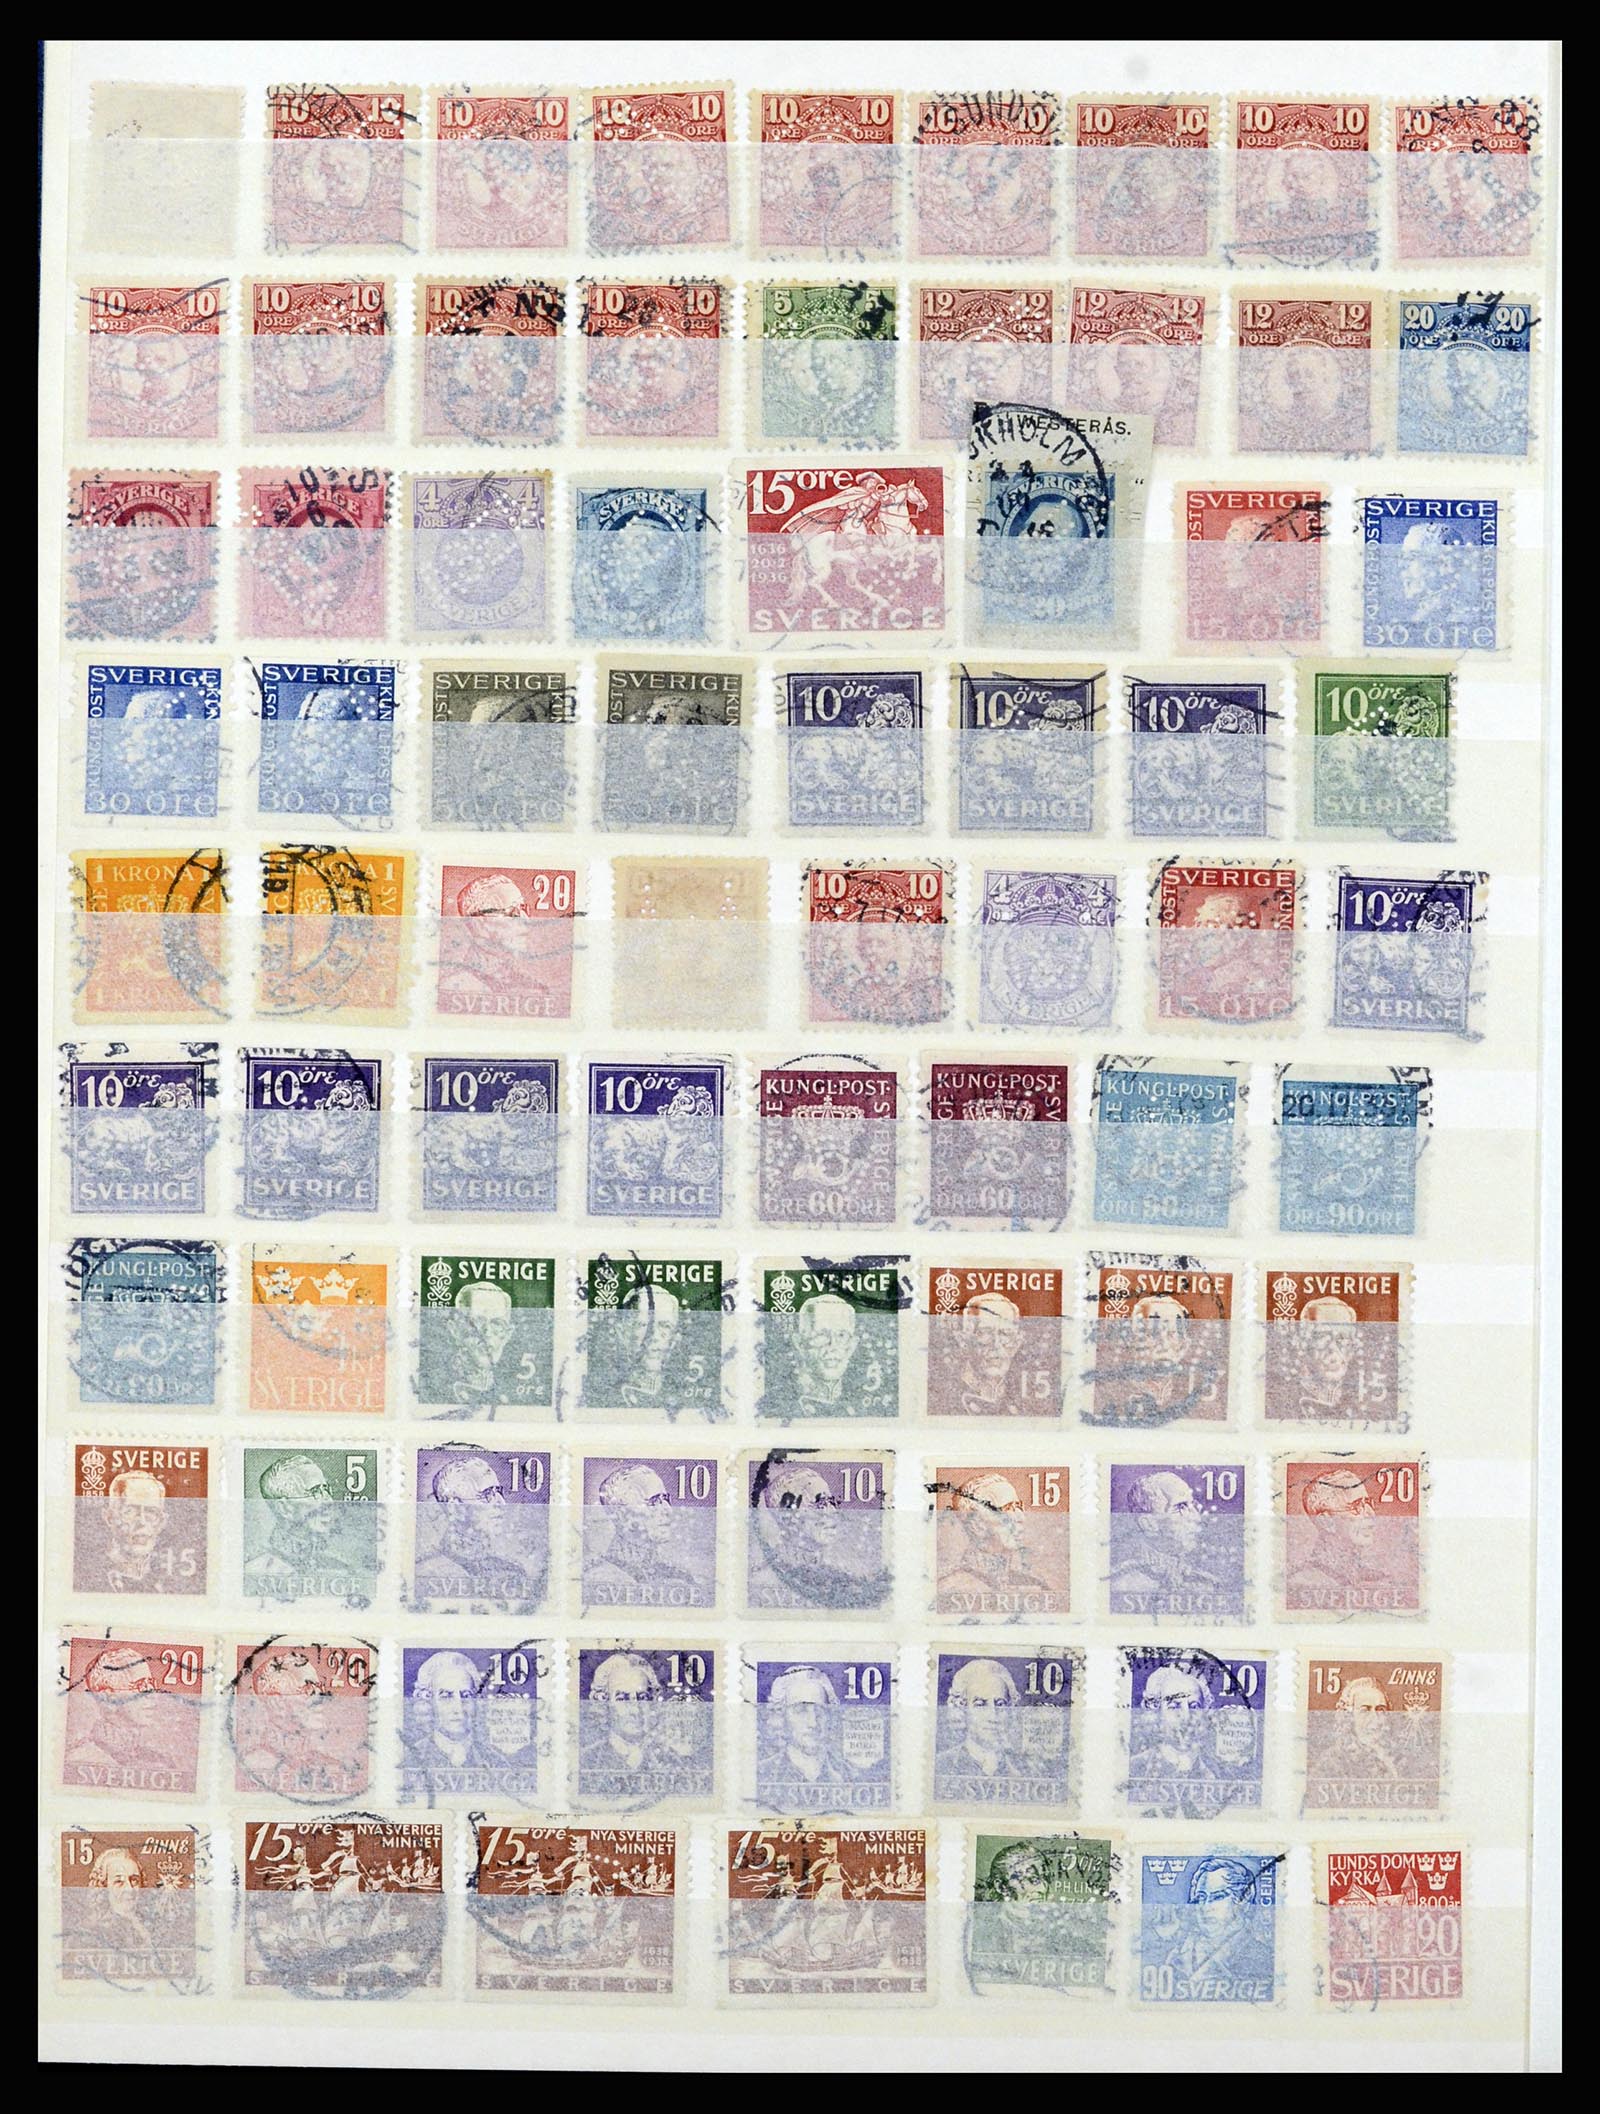 37057 051 - Postzegelverzameling 37057 Wereld perfins 1880-1950.